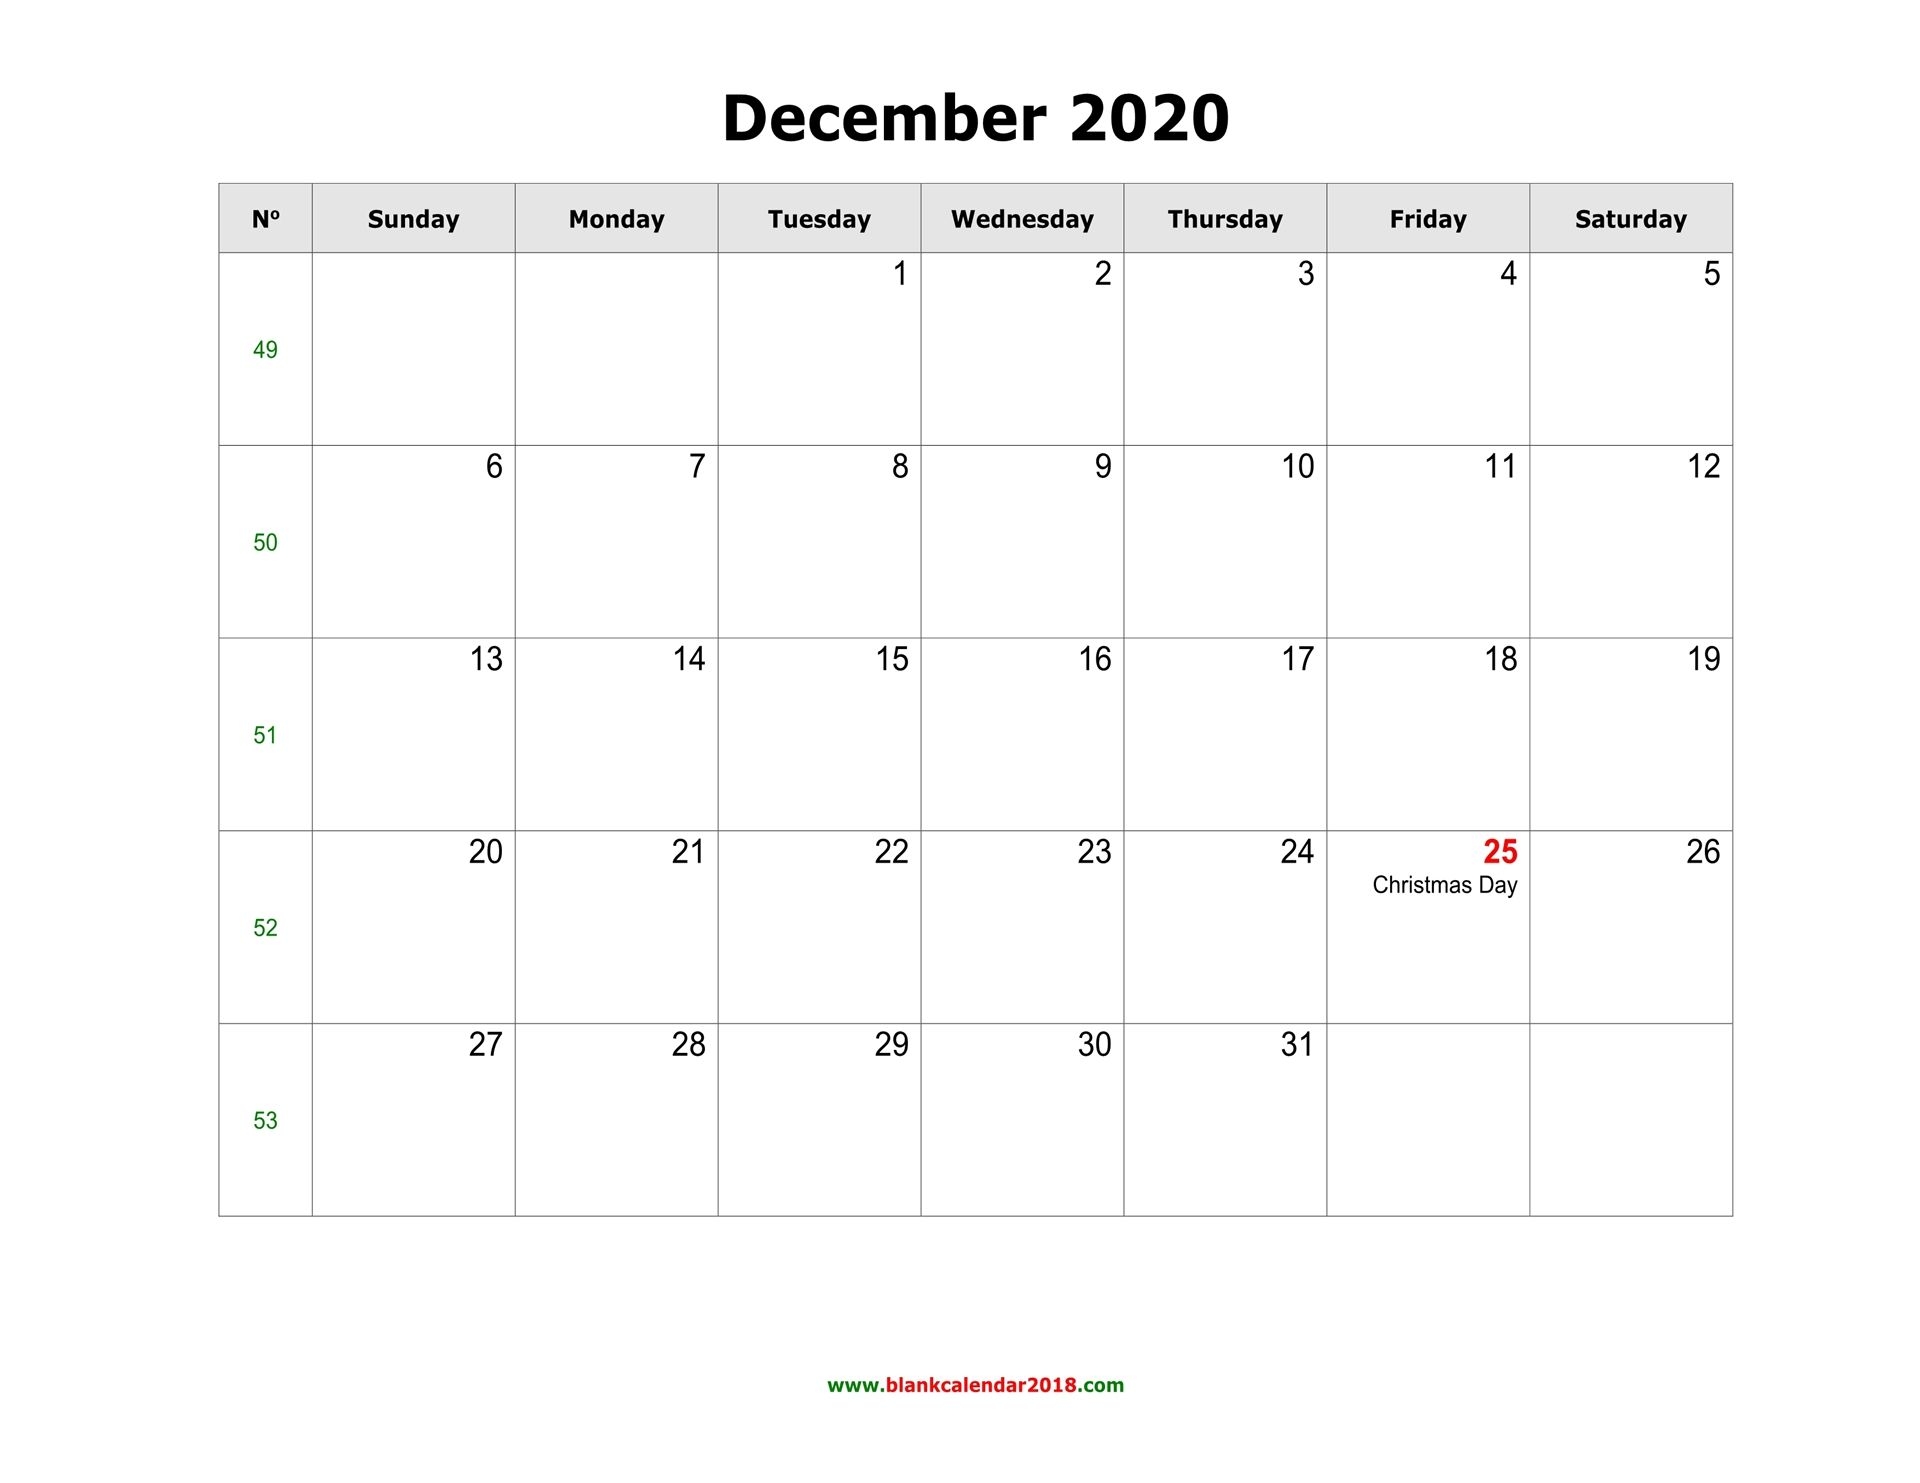 blank calendar for december 2020